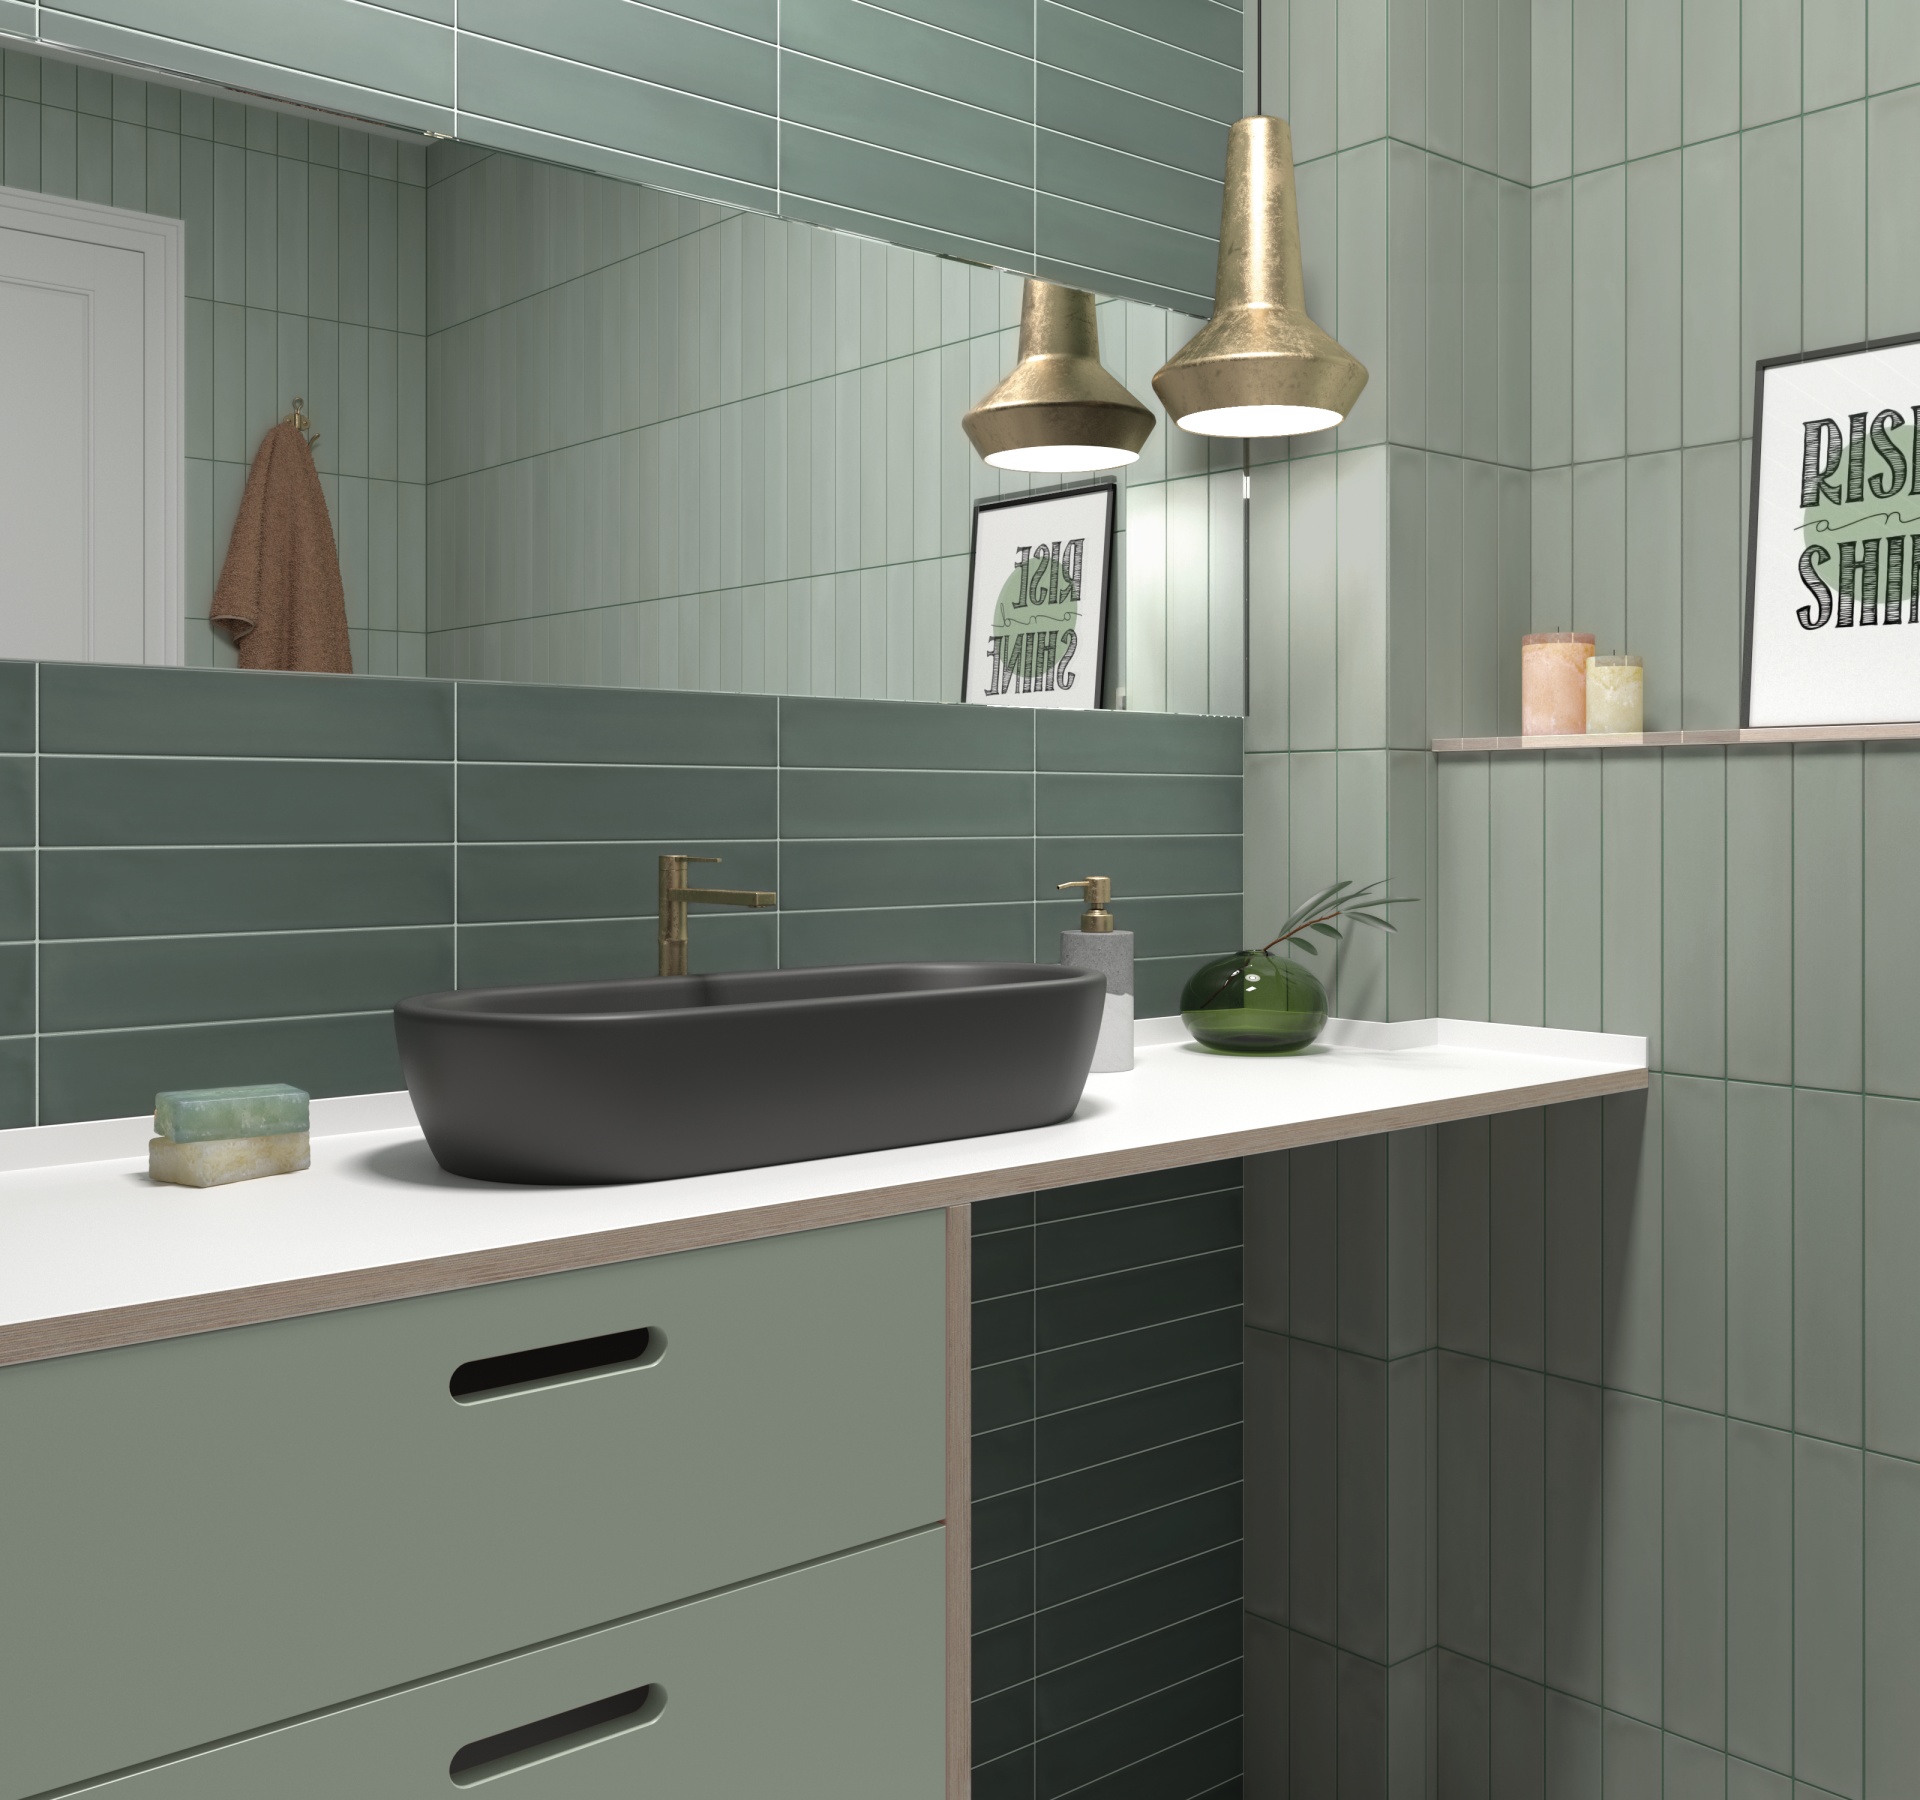 Zellige vert nuances de jade sans motifs sur une salle de bain ton sur ton avec vasque noire, meuble vert, éclairage cuivre, accessoires déco